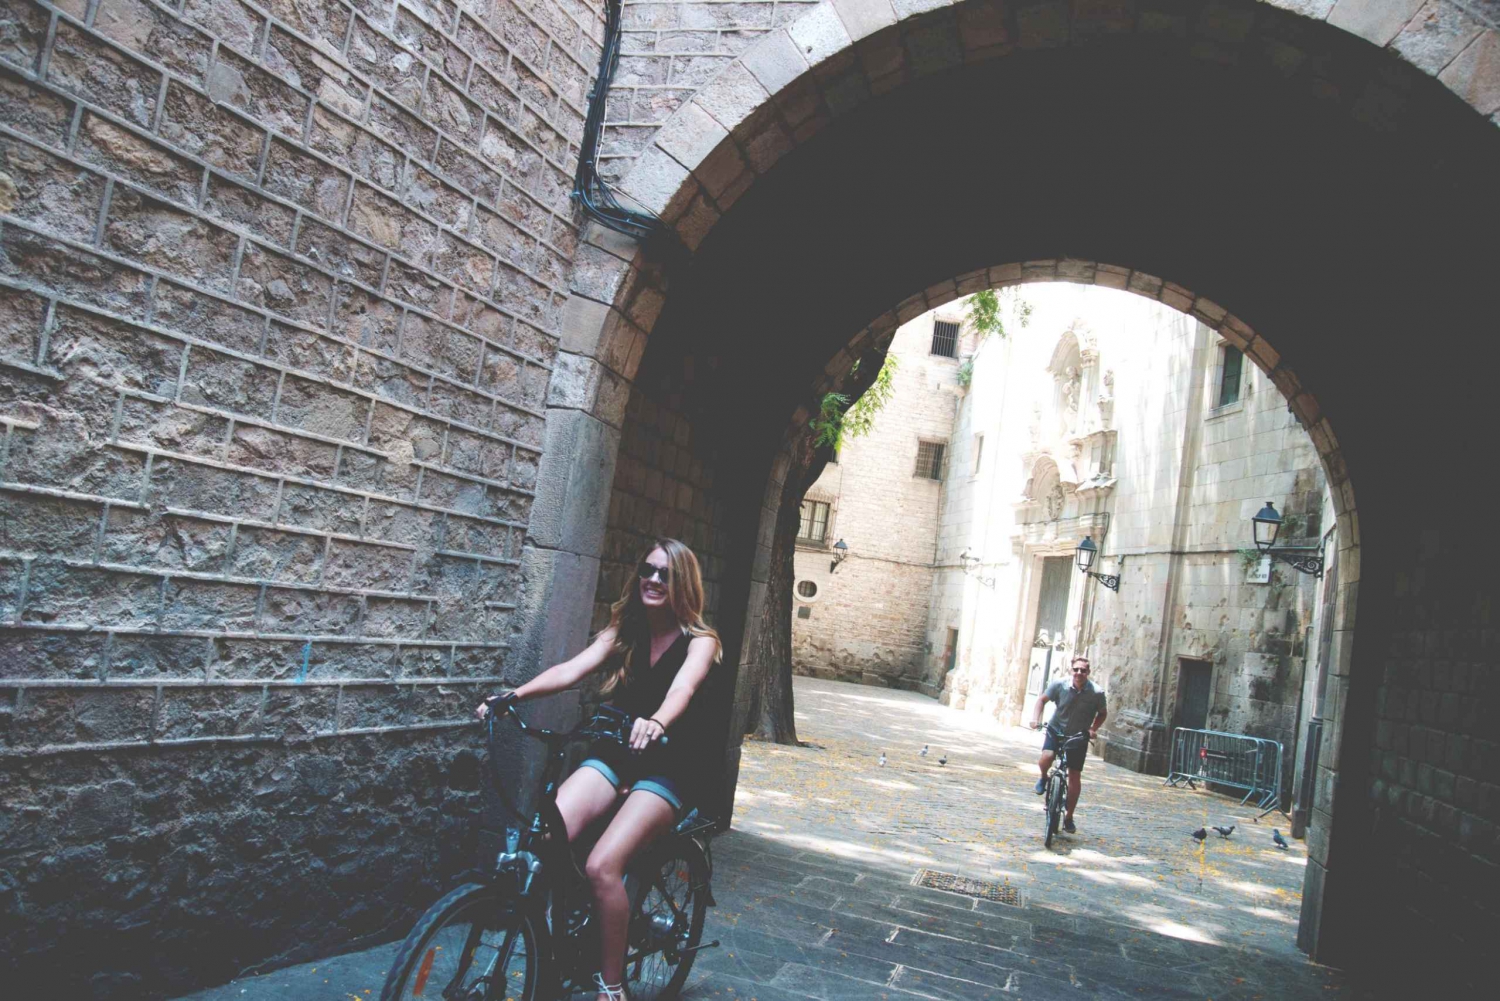 Barcelona: Unentdeckte Geheimnisse von Picasso auf dem E-Bike